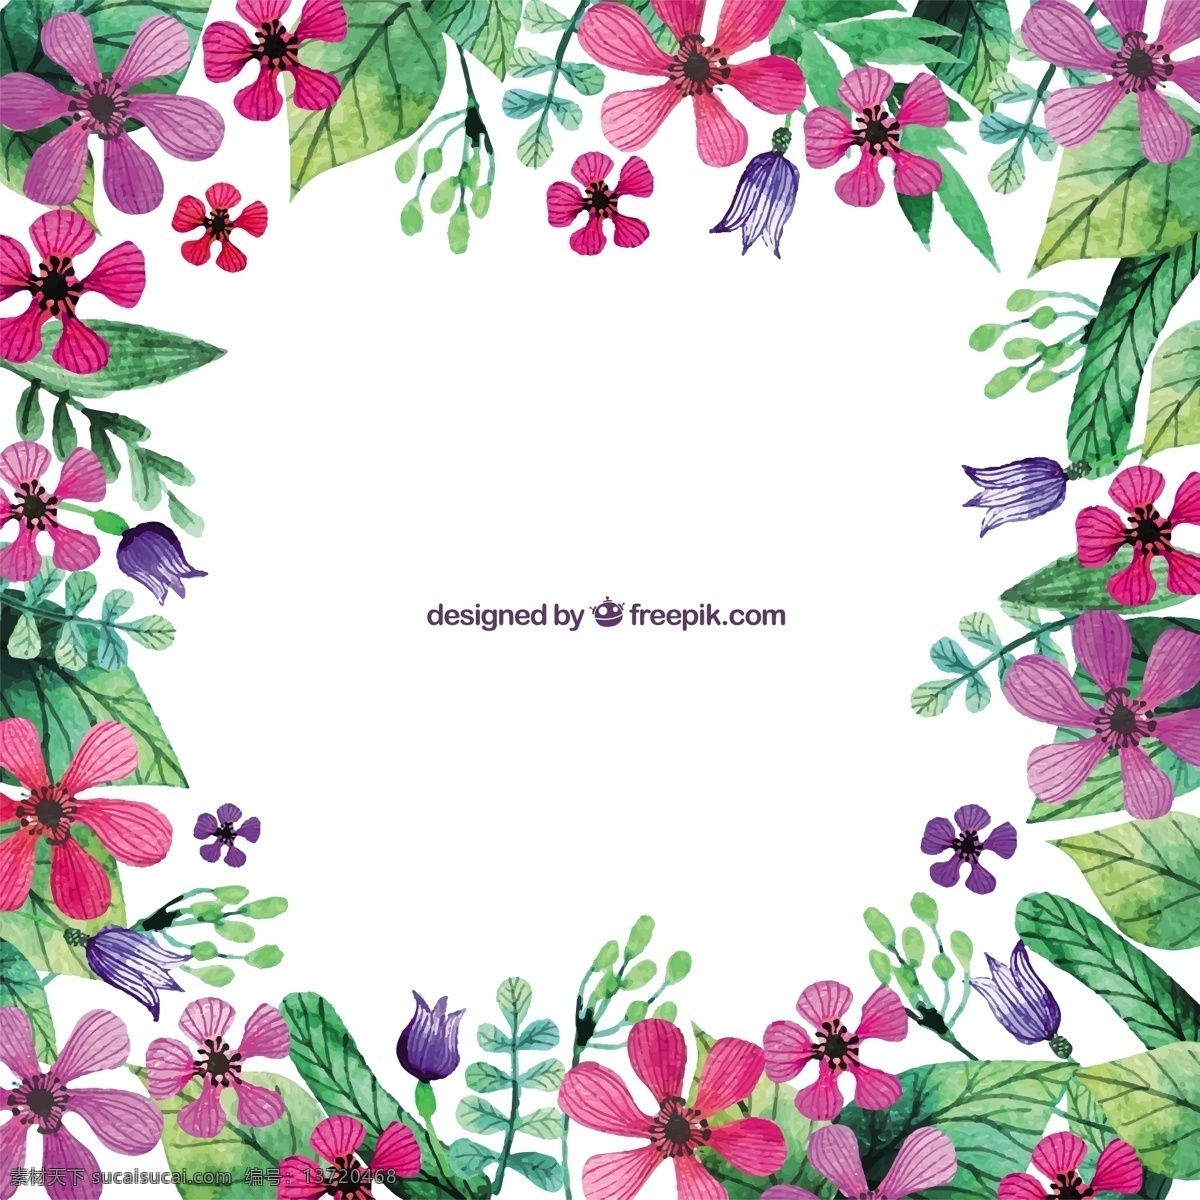 手绘 粉红色 花朵 边框 背景 框架 水彩 鲜花 边境 自然 油漆 花卉 性质